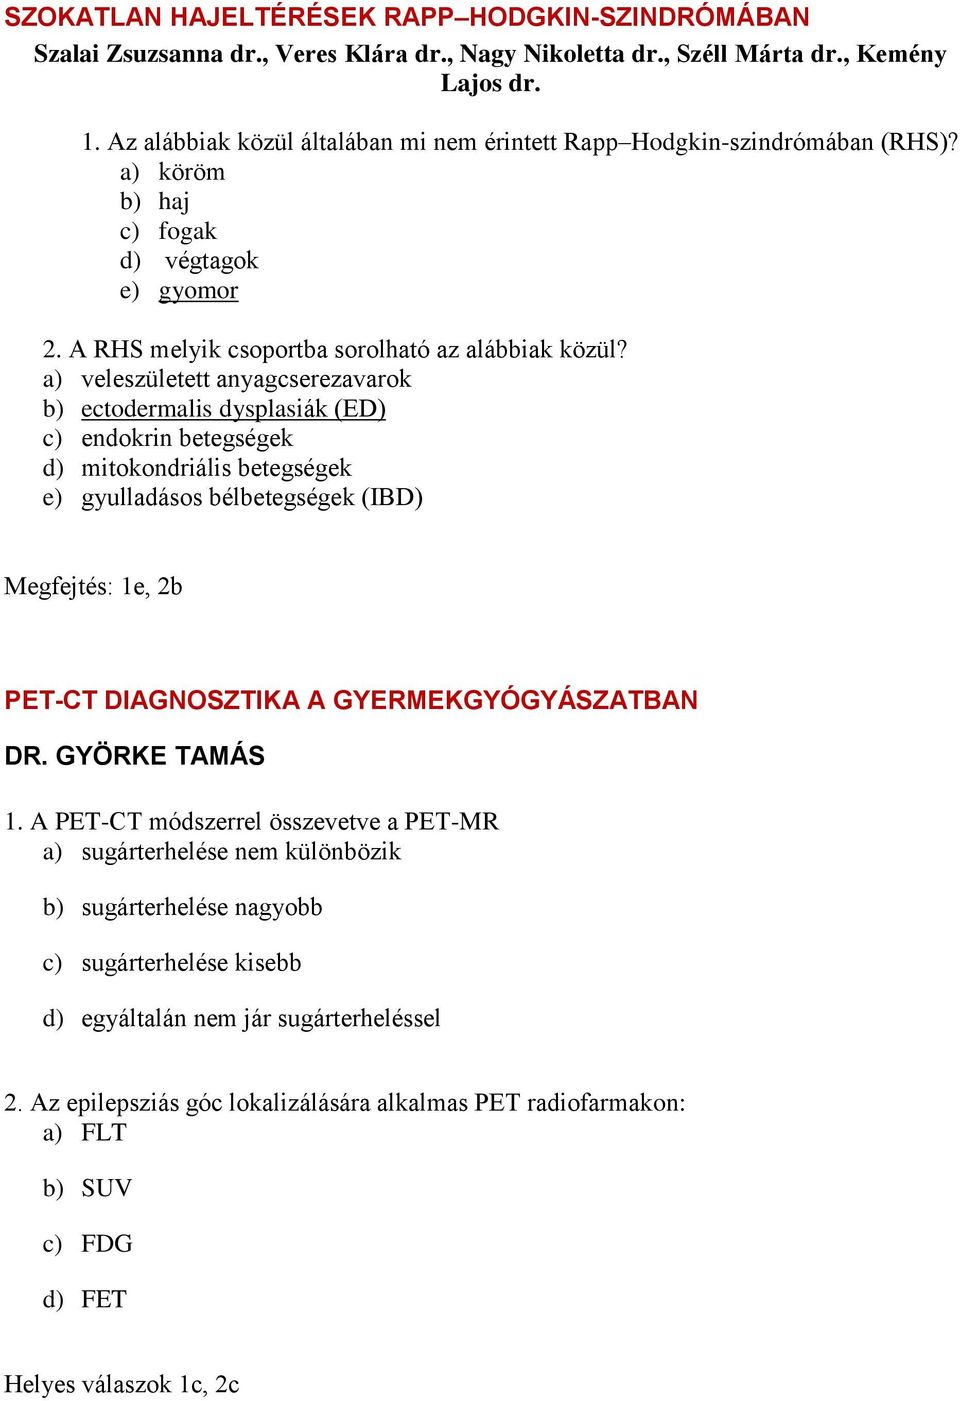 a) veleszületett anyagcserezavarok b) ectodermalis dysplasiák (ED) c) endokrin betegségek d) mitokondriális betegségek e) gyulladásos bélbetegségek (IBD) Megfejtés: 1e, 2b PET-CT DIAGNOSZTIKA A